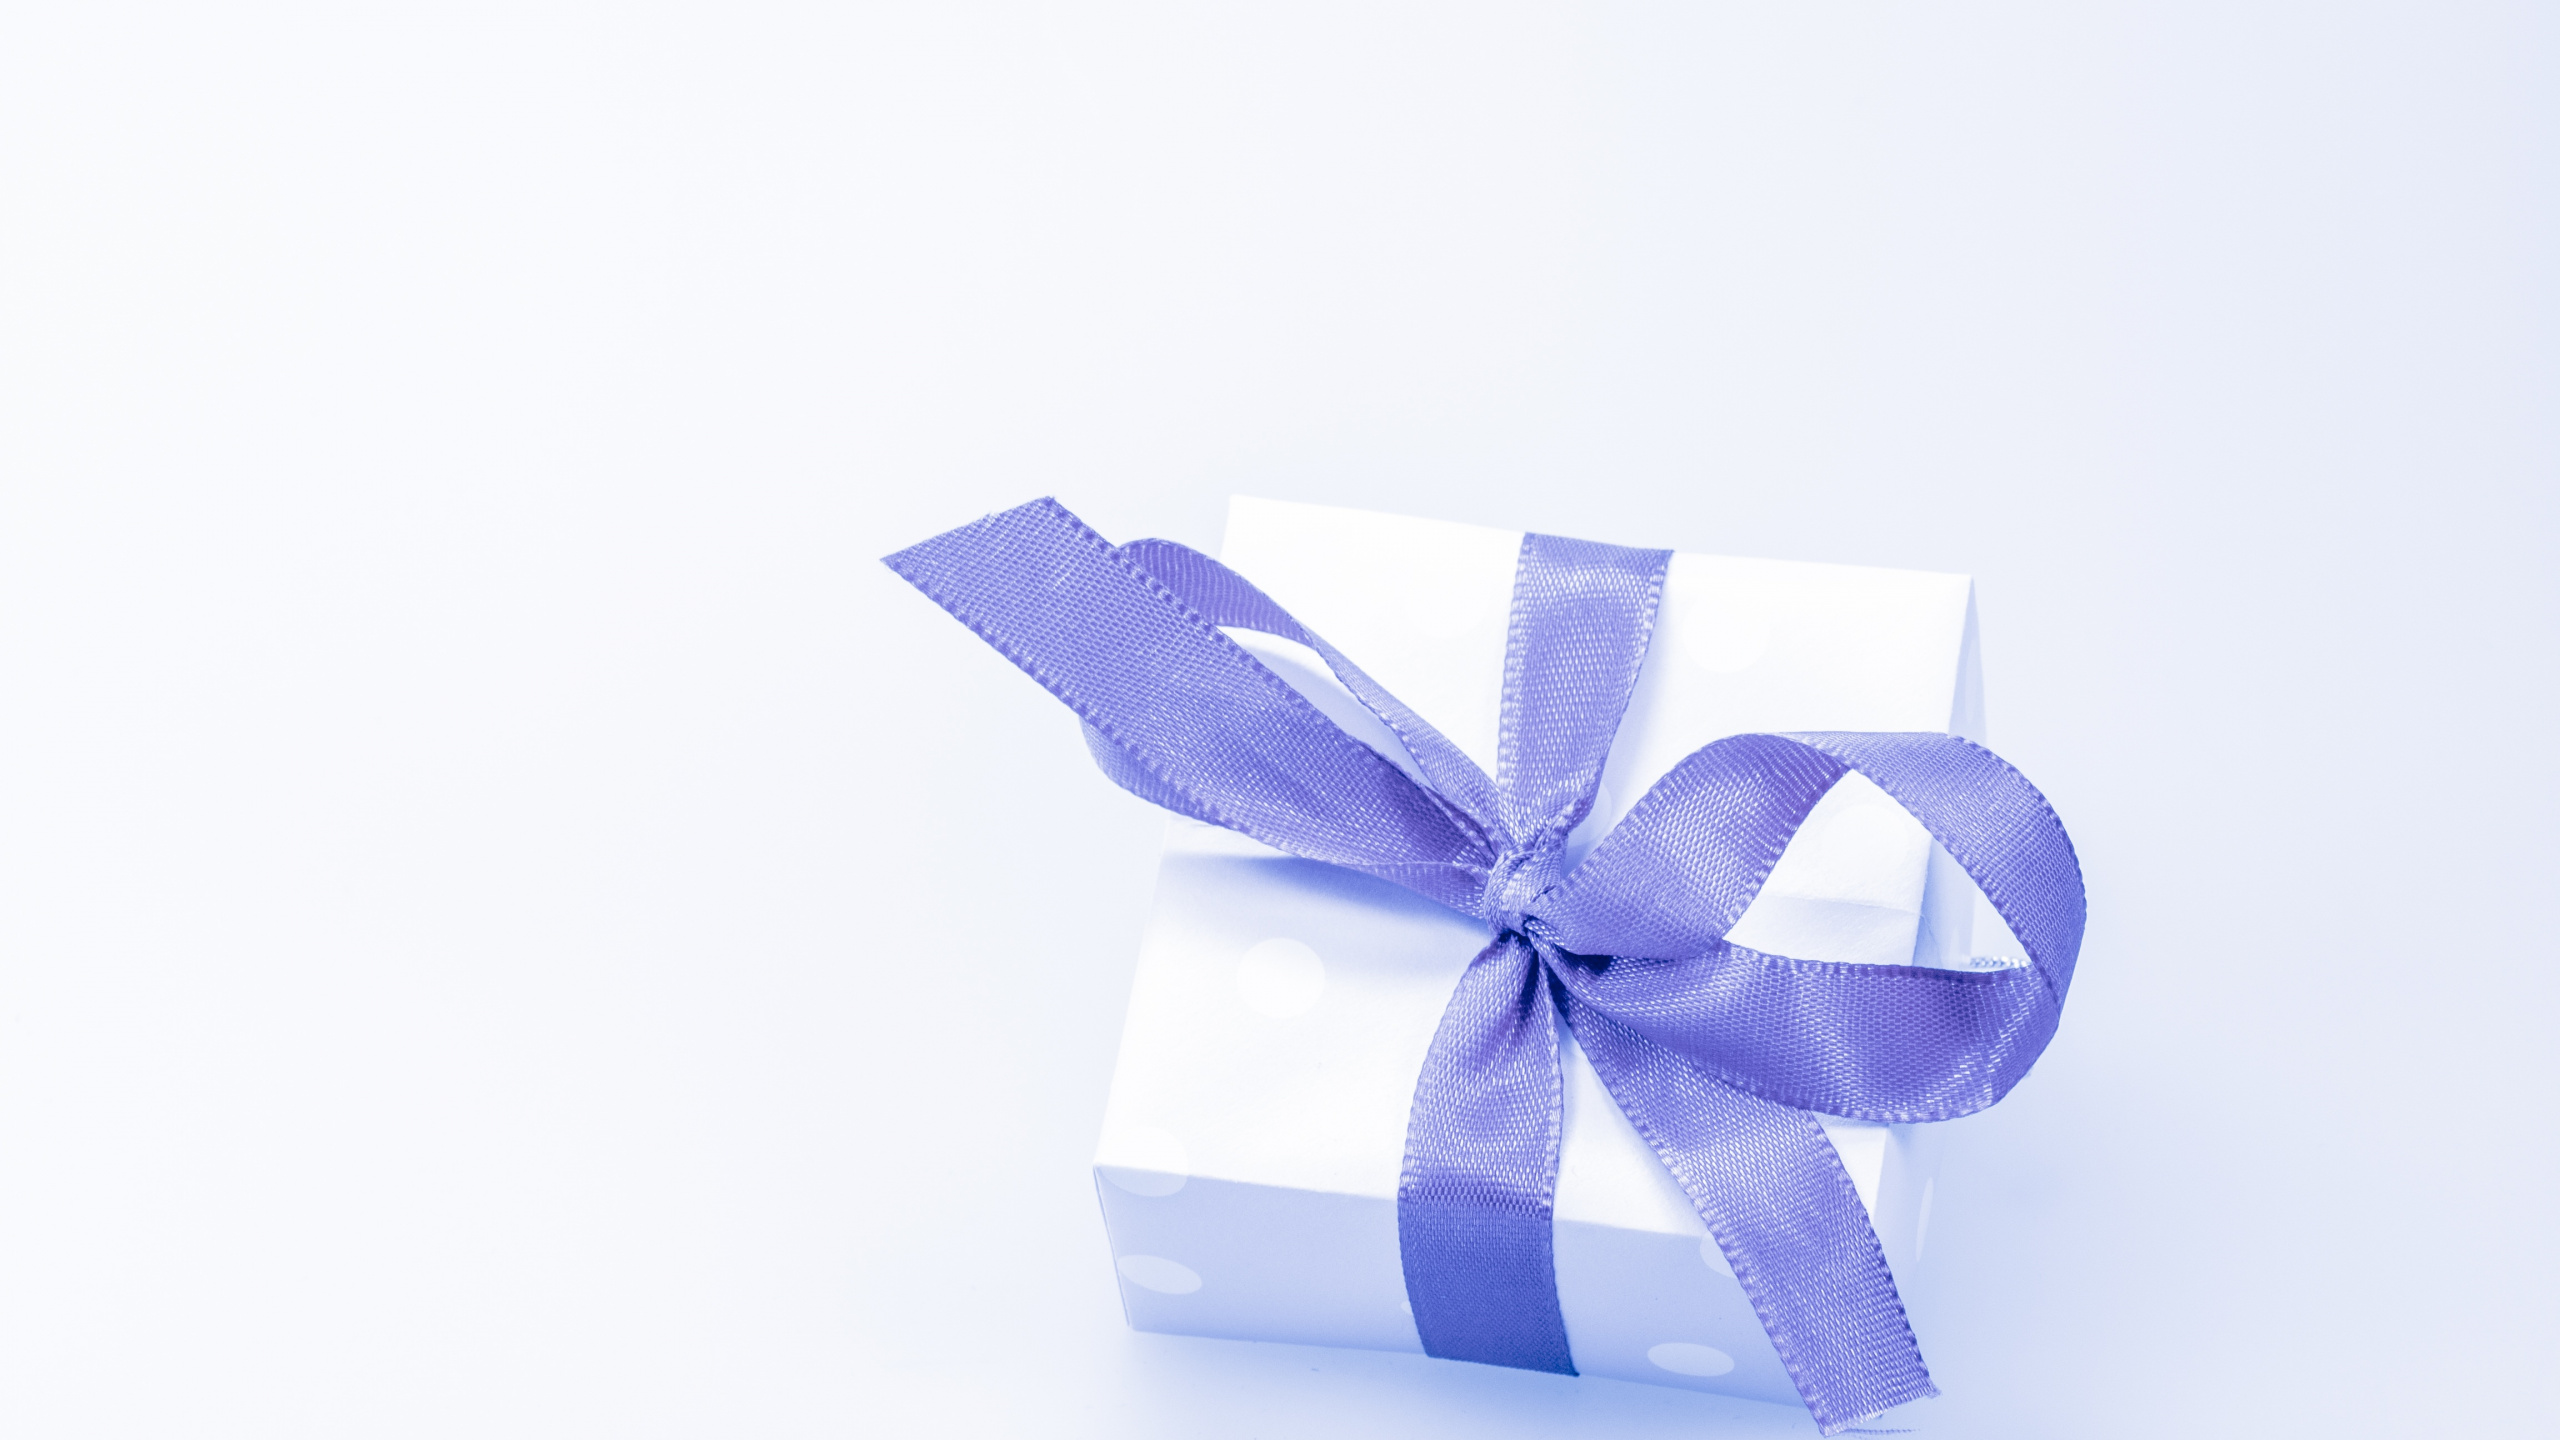 礼物, 礼品卡, 礼品包装, 丝带, 紫罗兰色 壁纸 2560x1440 允许